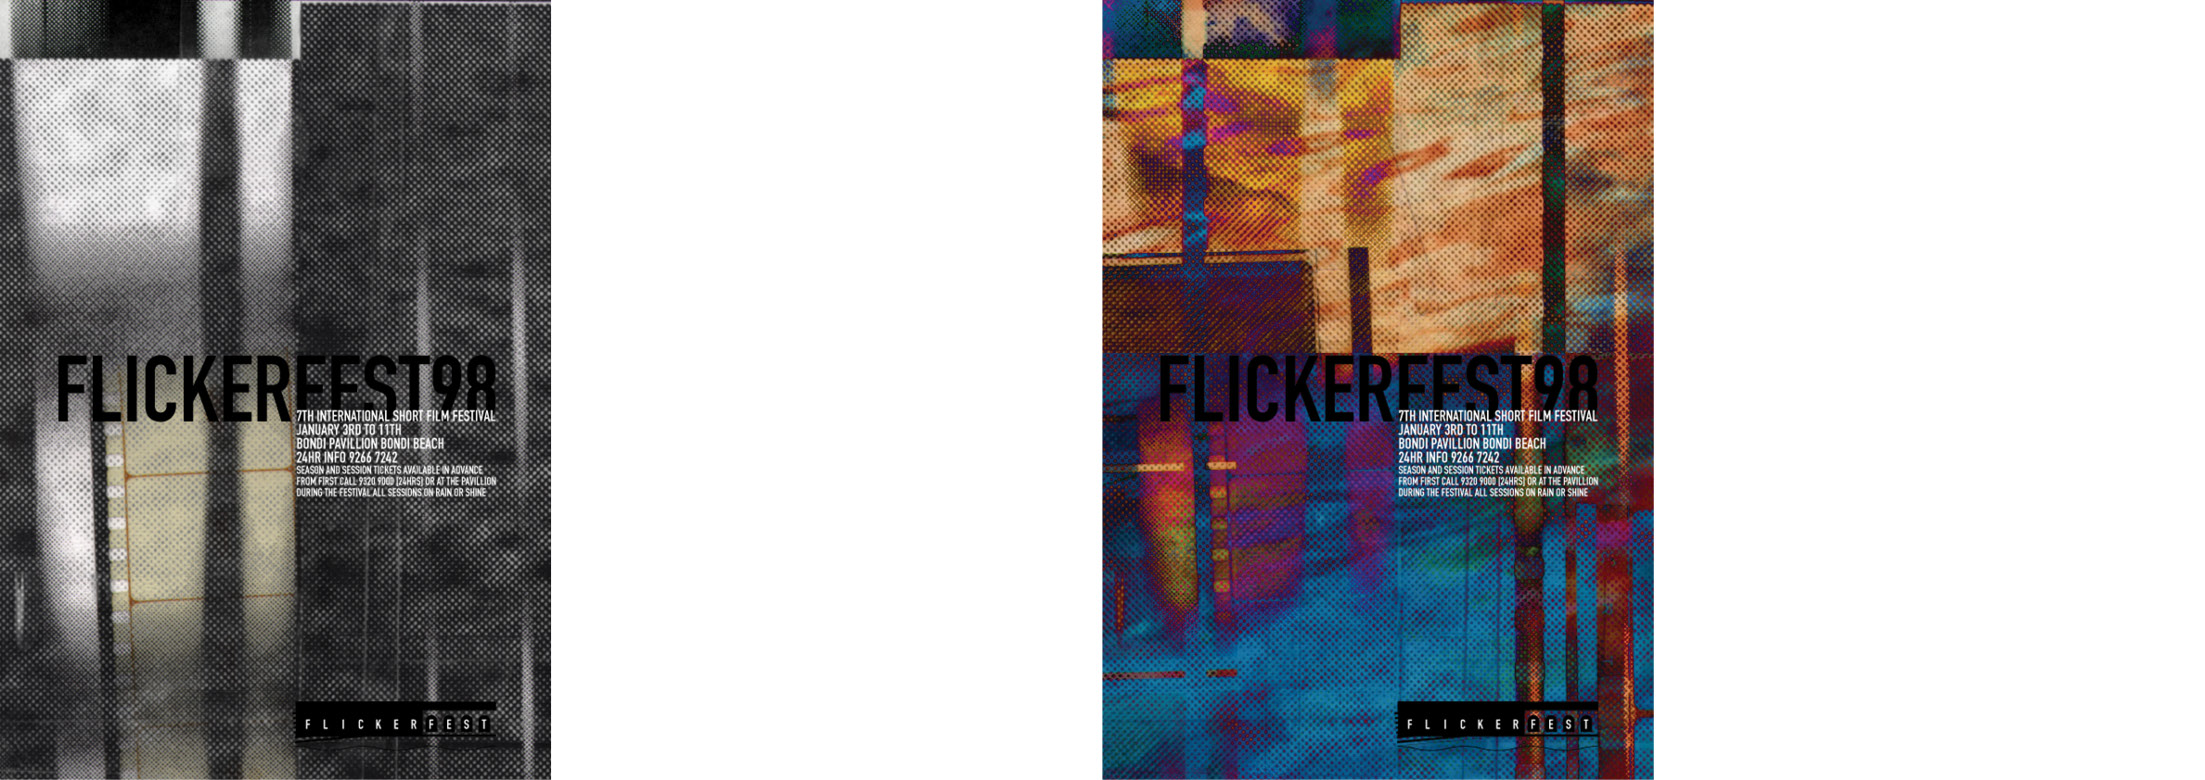 Flickerfest 2000 Poster